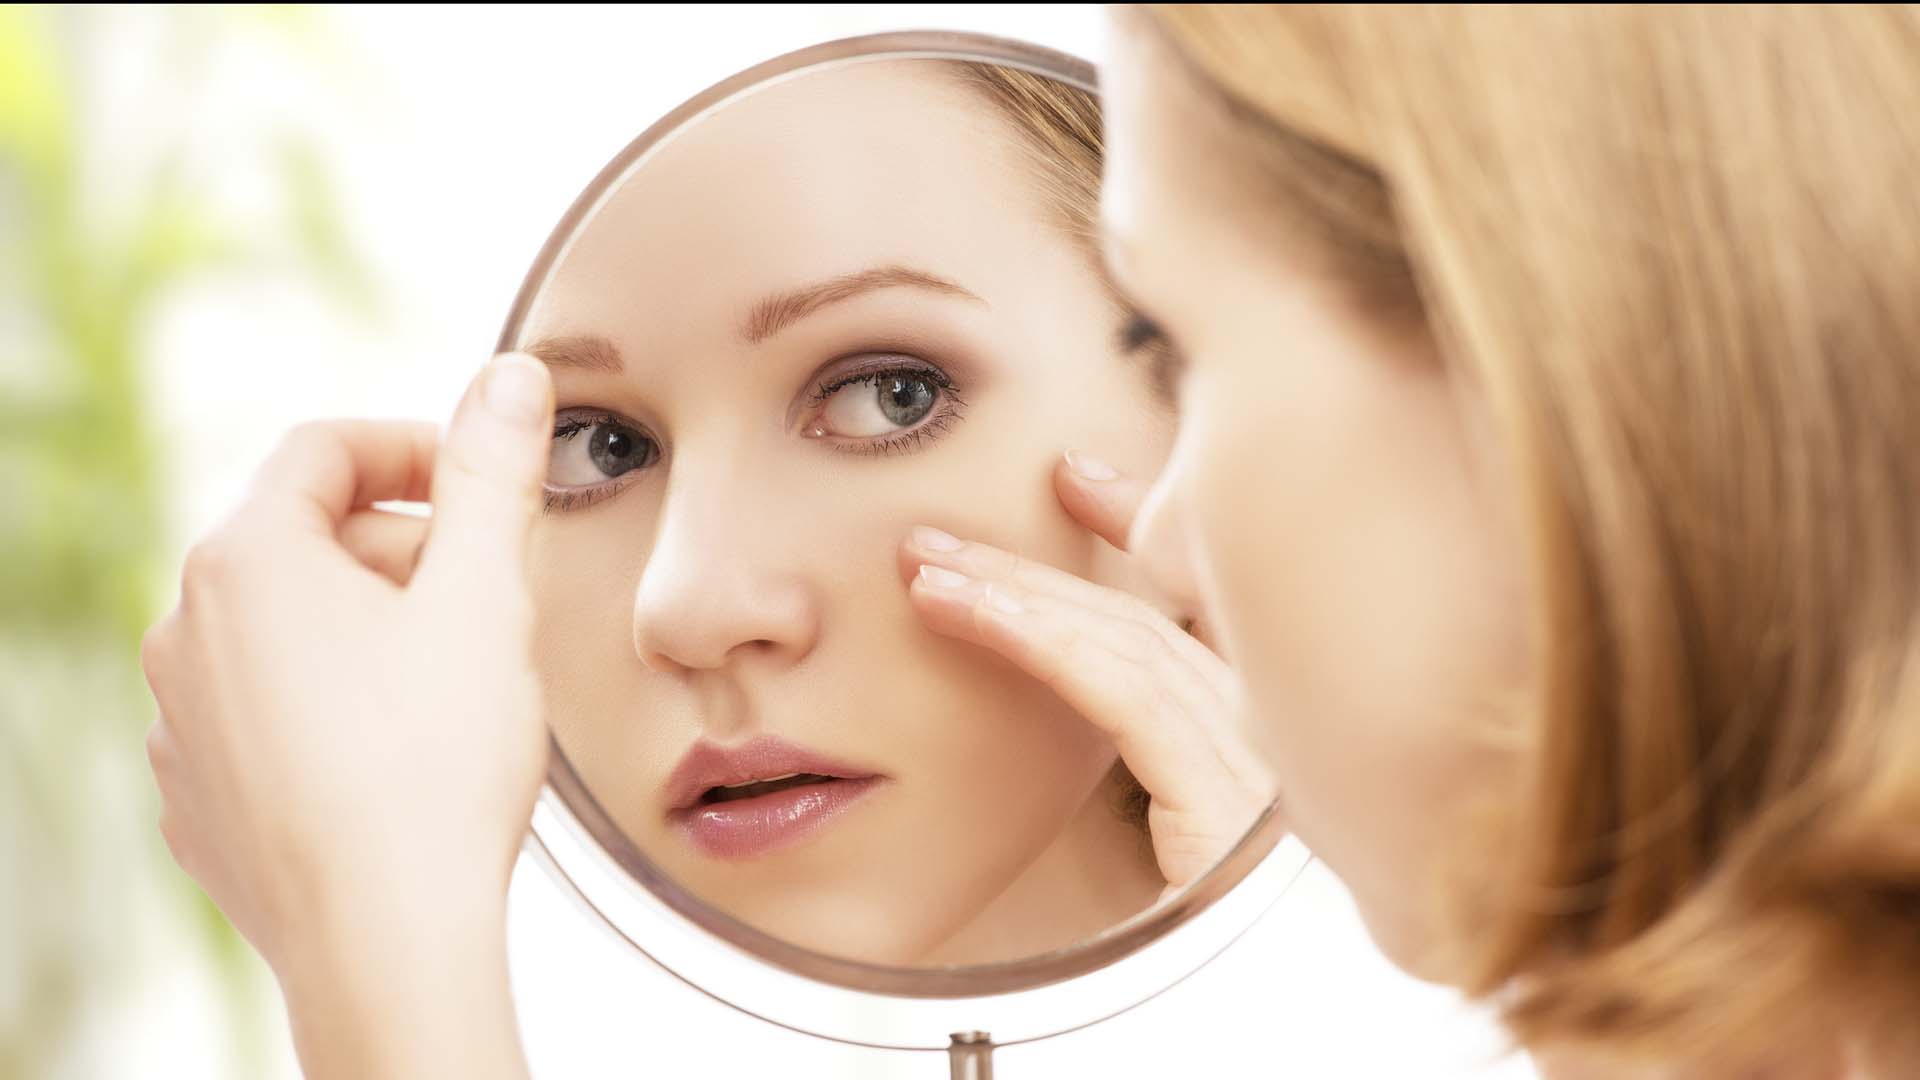 Los tratamientos son múltiples y varían dependiendo del tipo de piel y el nivel del acné, así que no te mortifiques